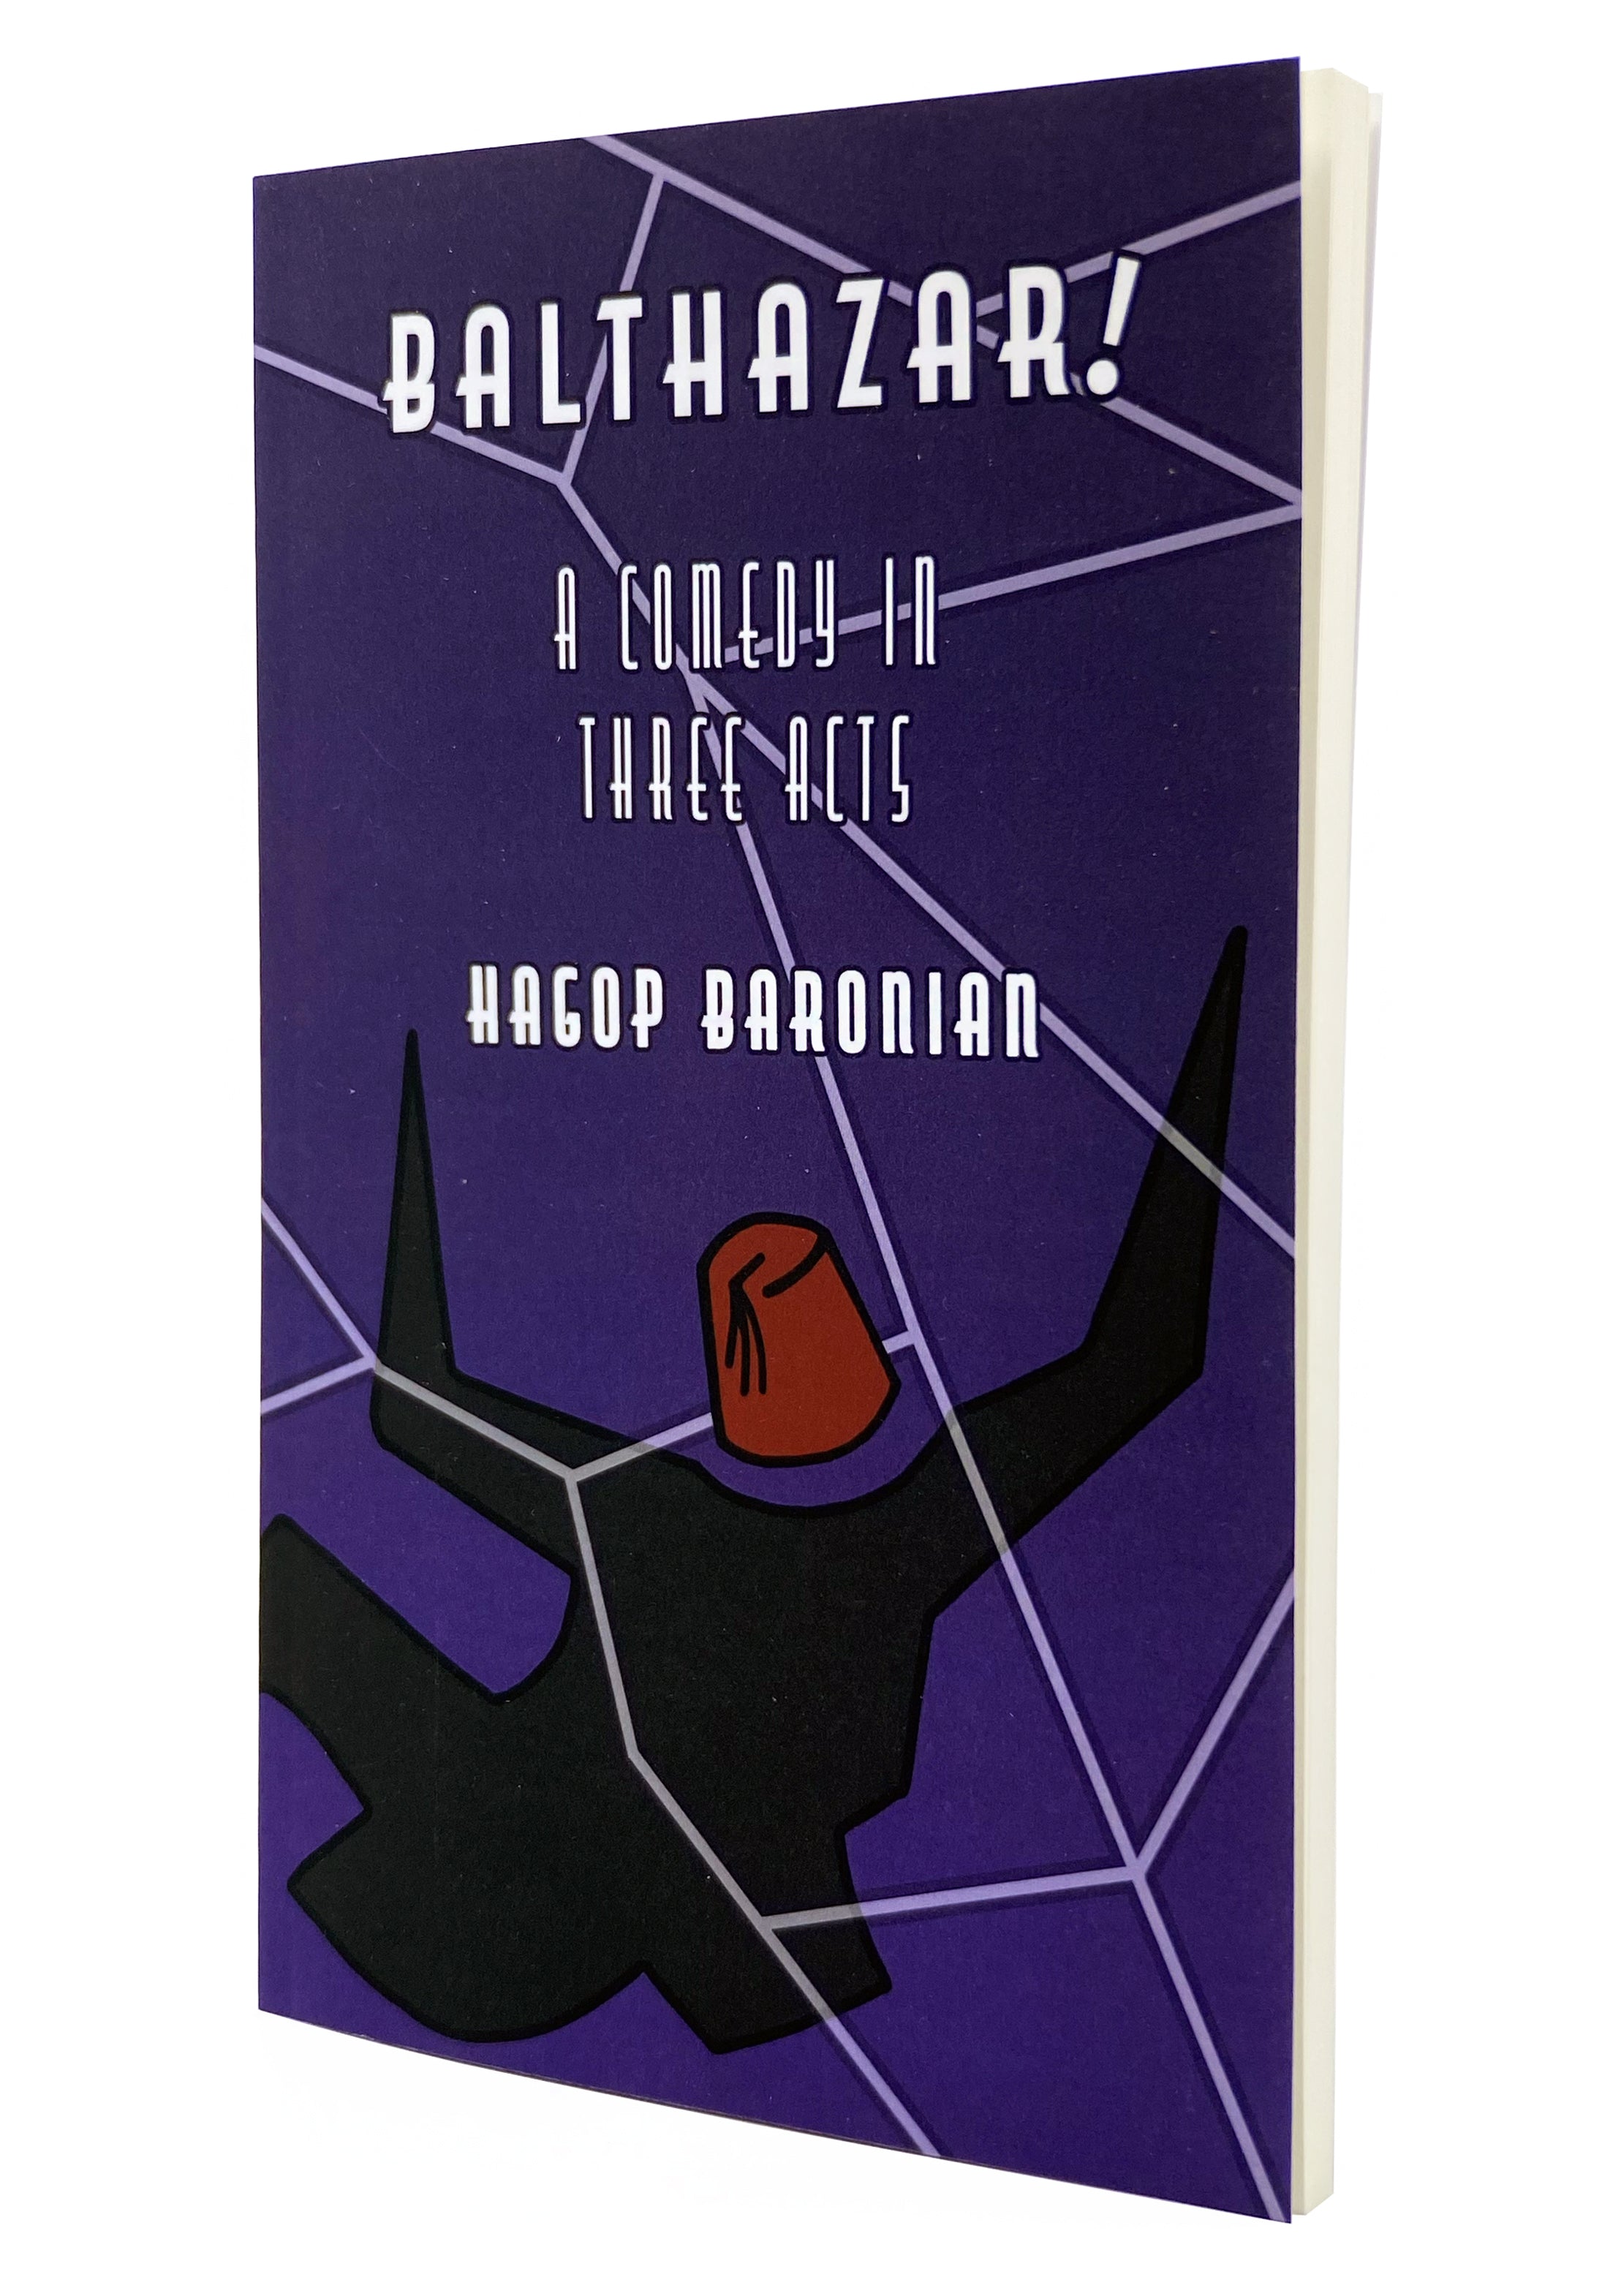 Balthazar! Baronian English cover